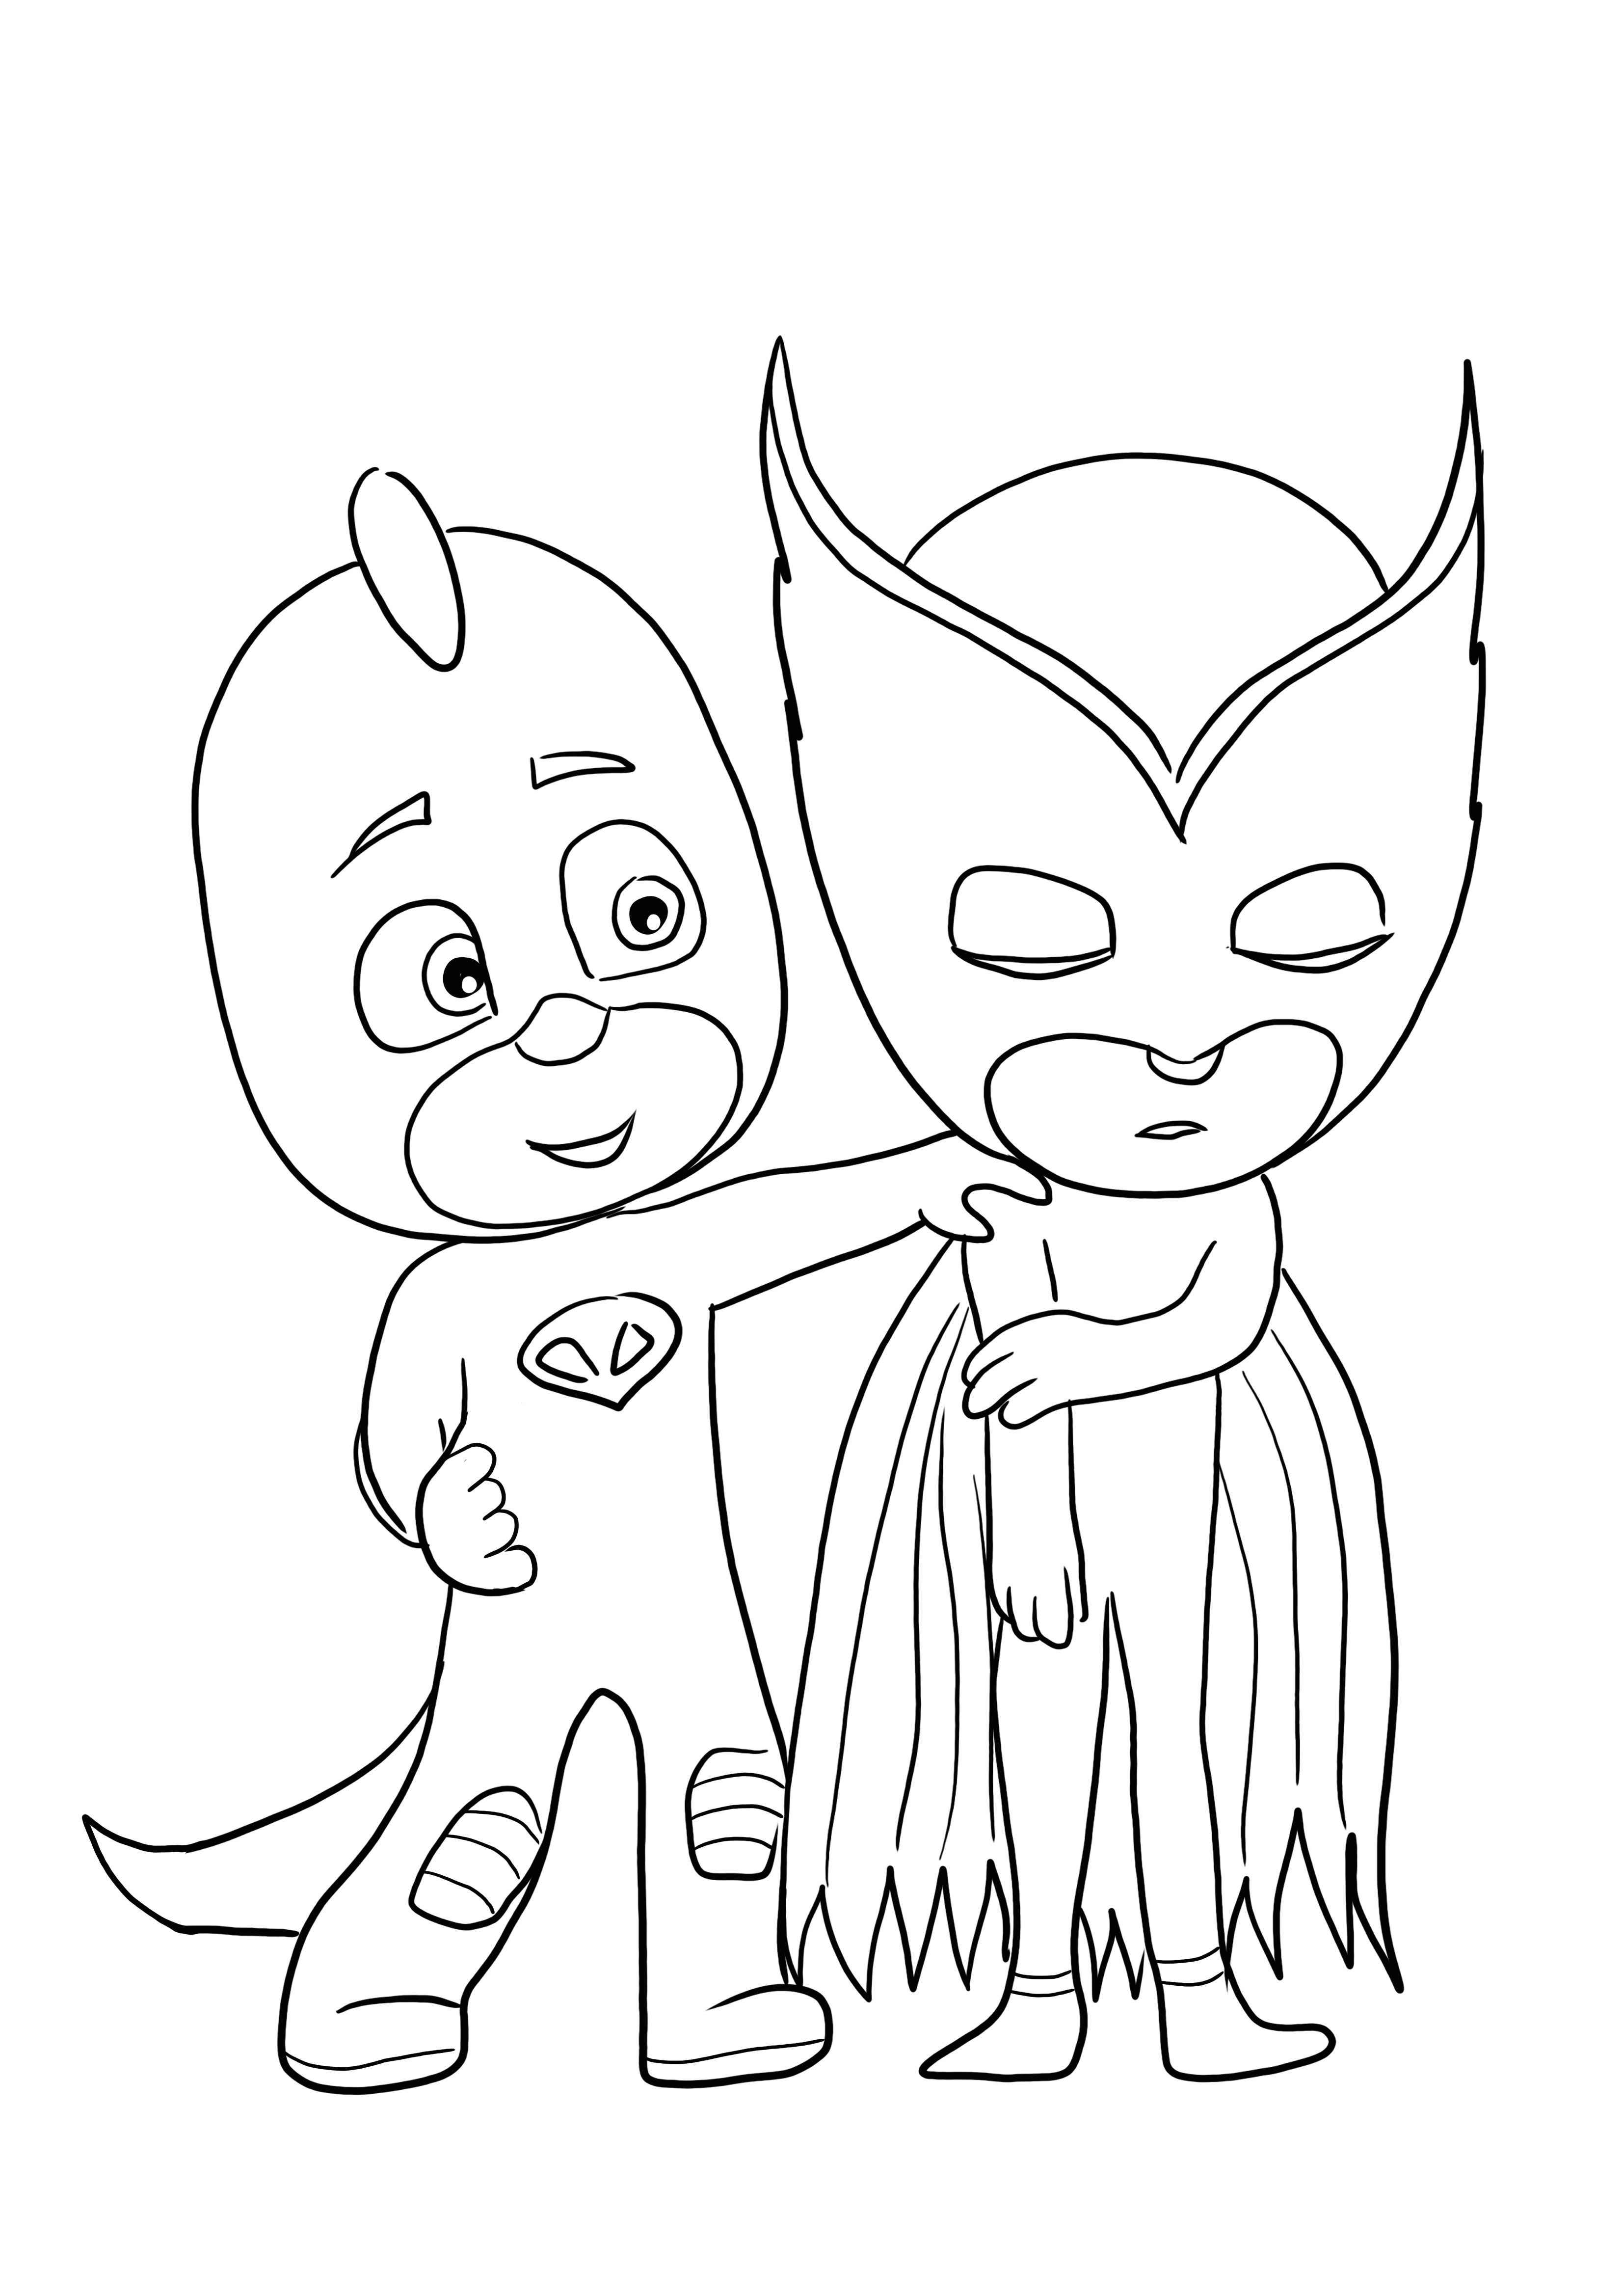 PJ Masks kahramanları ücretsiz indirme ve süper boyama sayfası